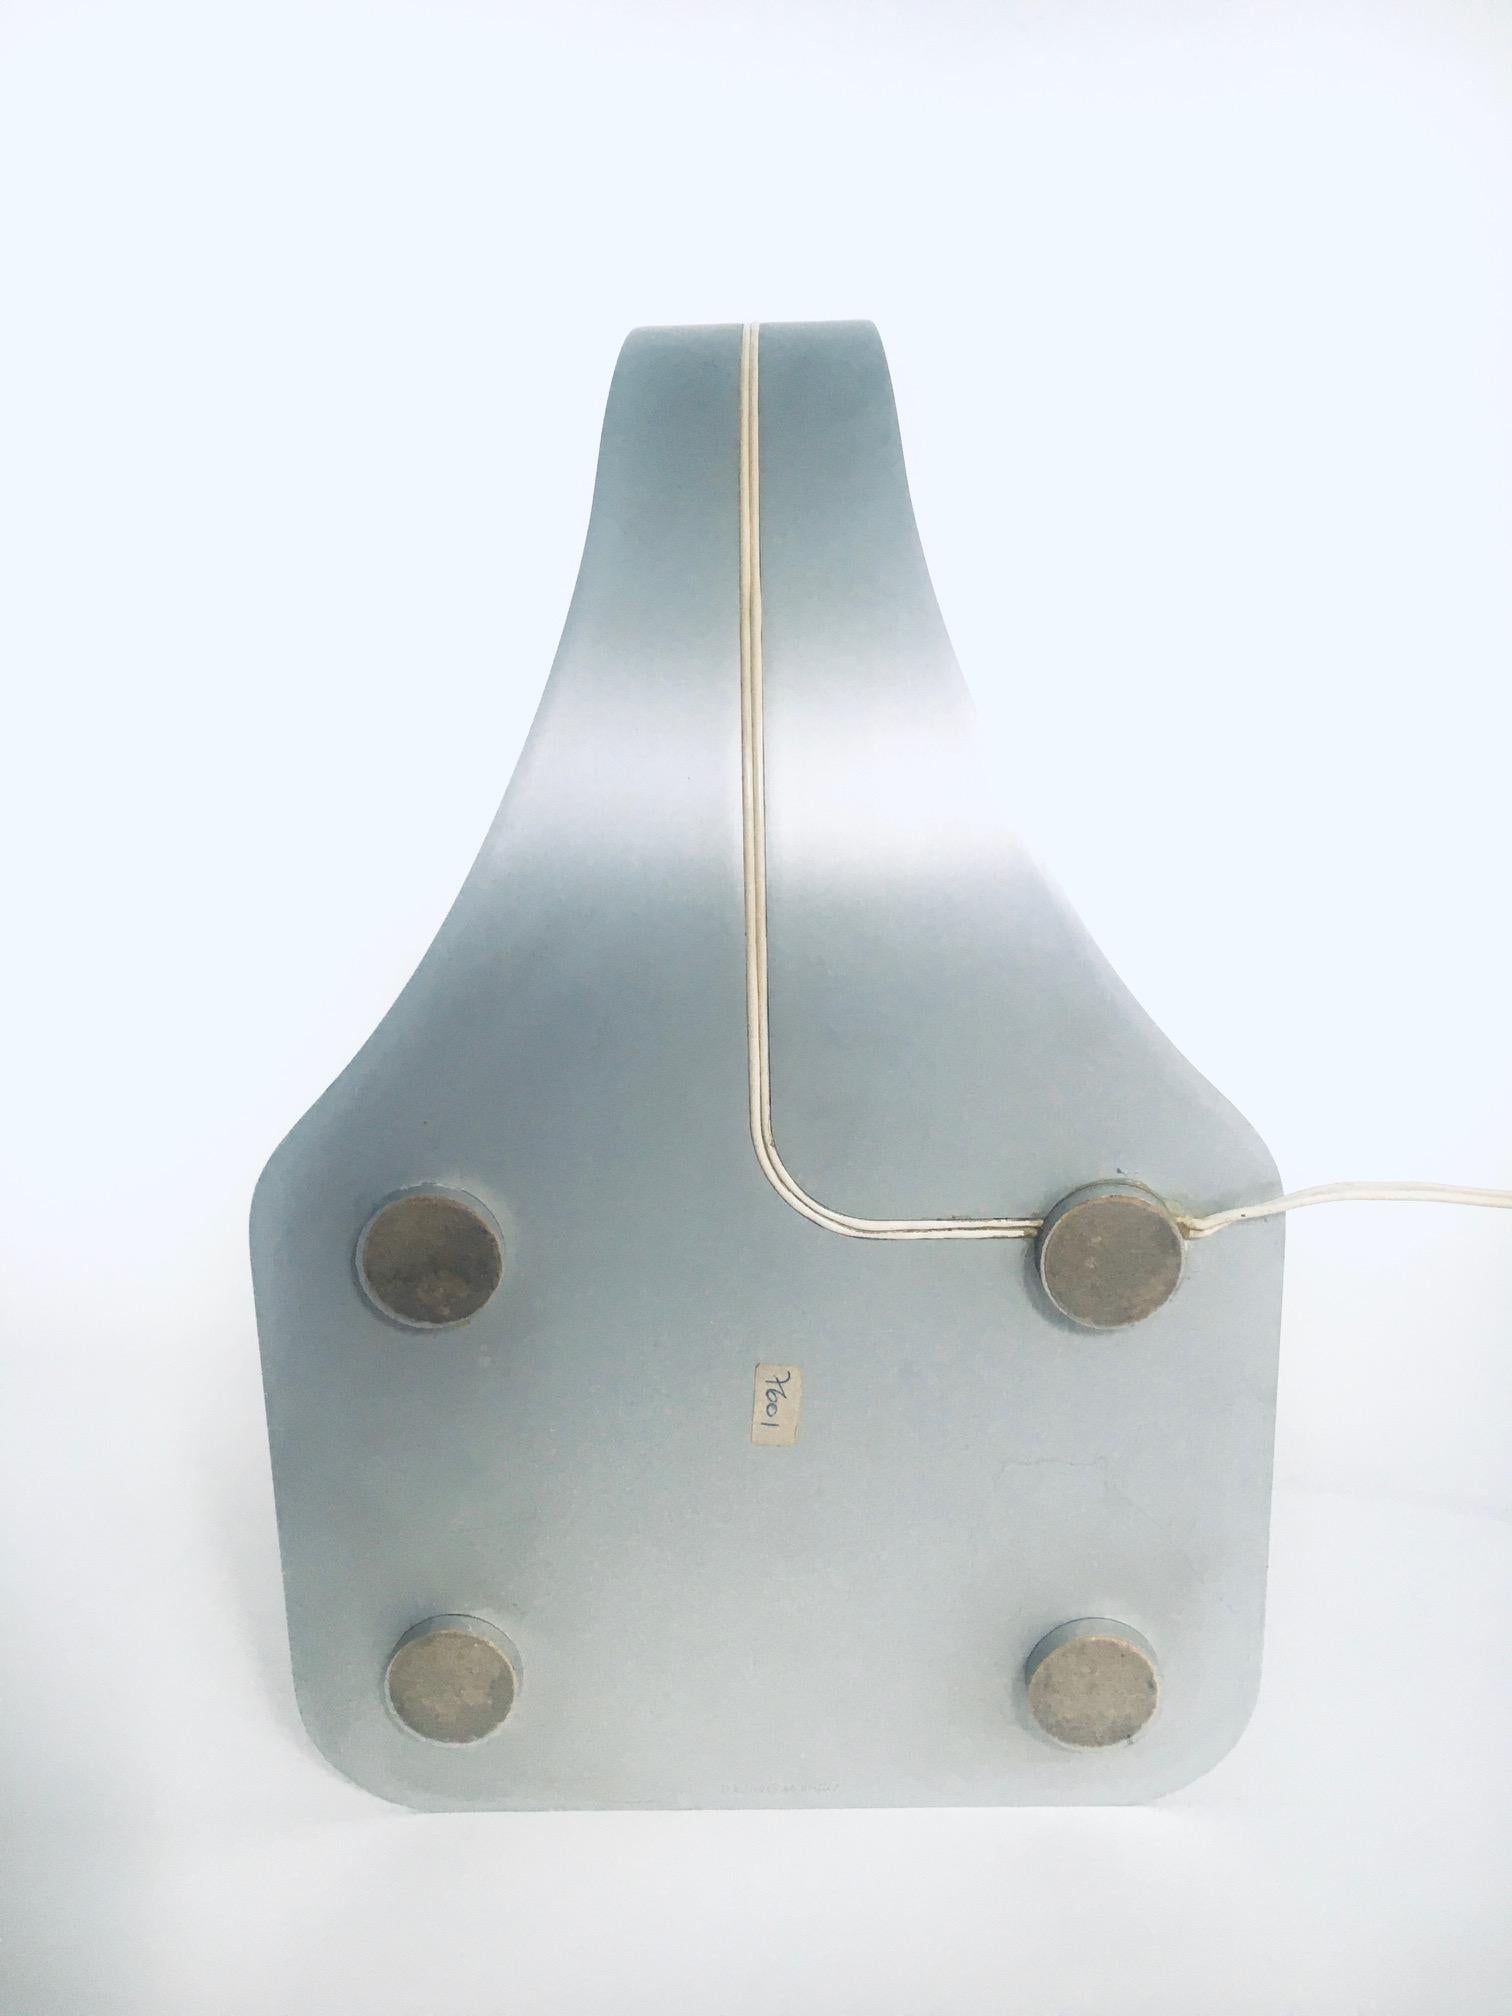 Aluminium 'COLOMBA' Desk Lamp by Walter & Moretti, France 1972 For Sale 6